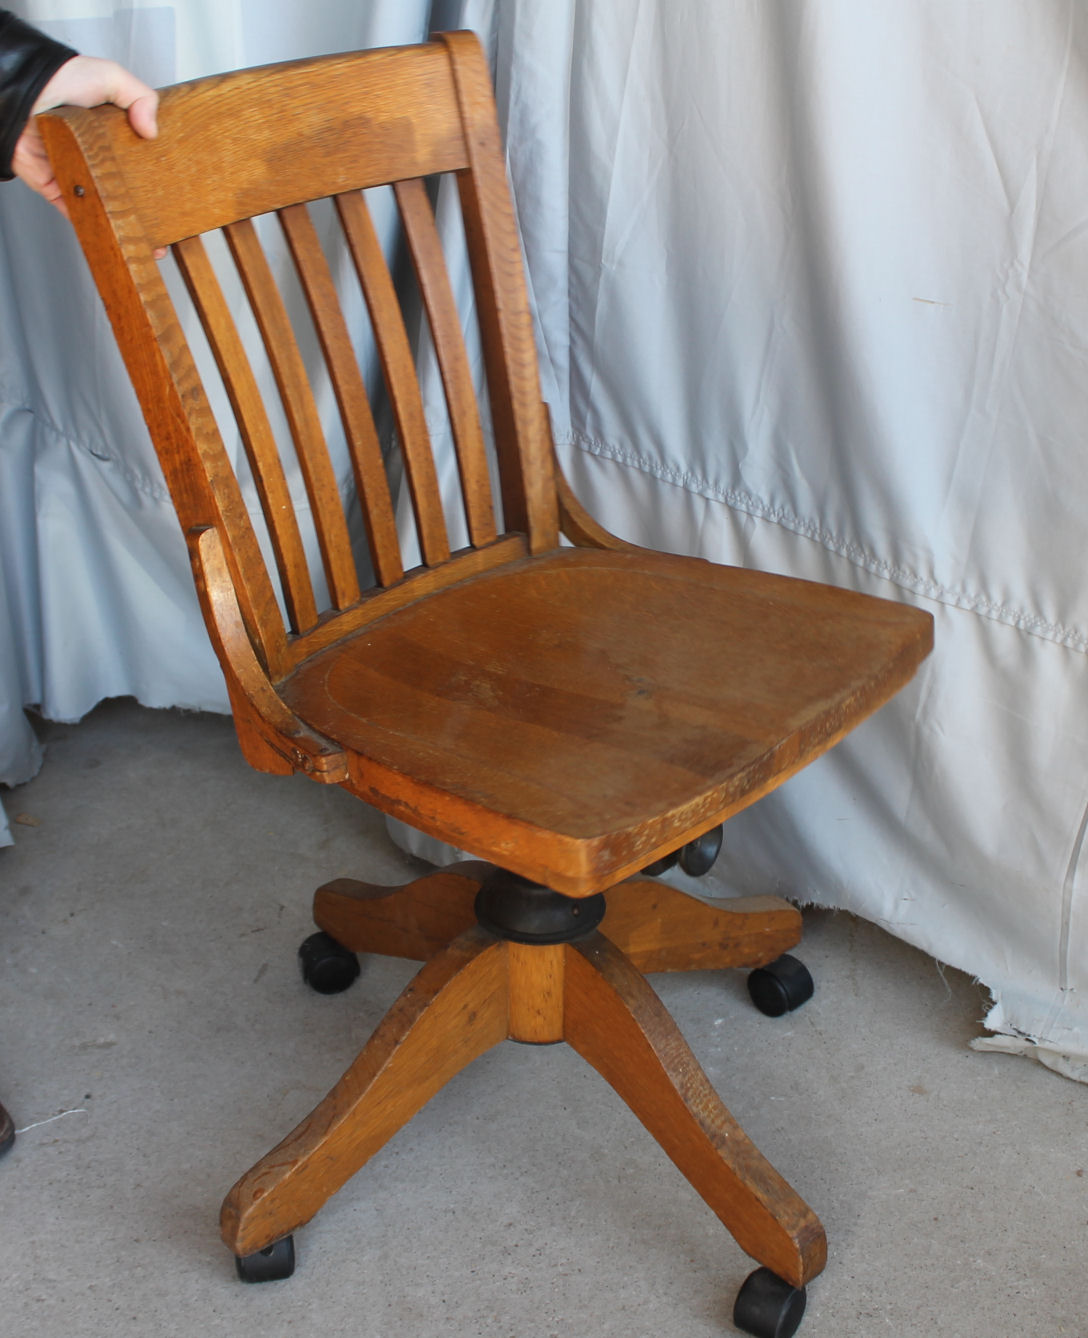 Bargain John's Antiques » Blog Archive Antique Oak swivel Office Chair